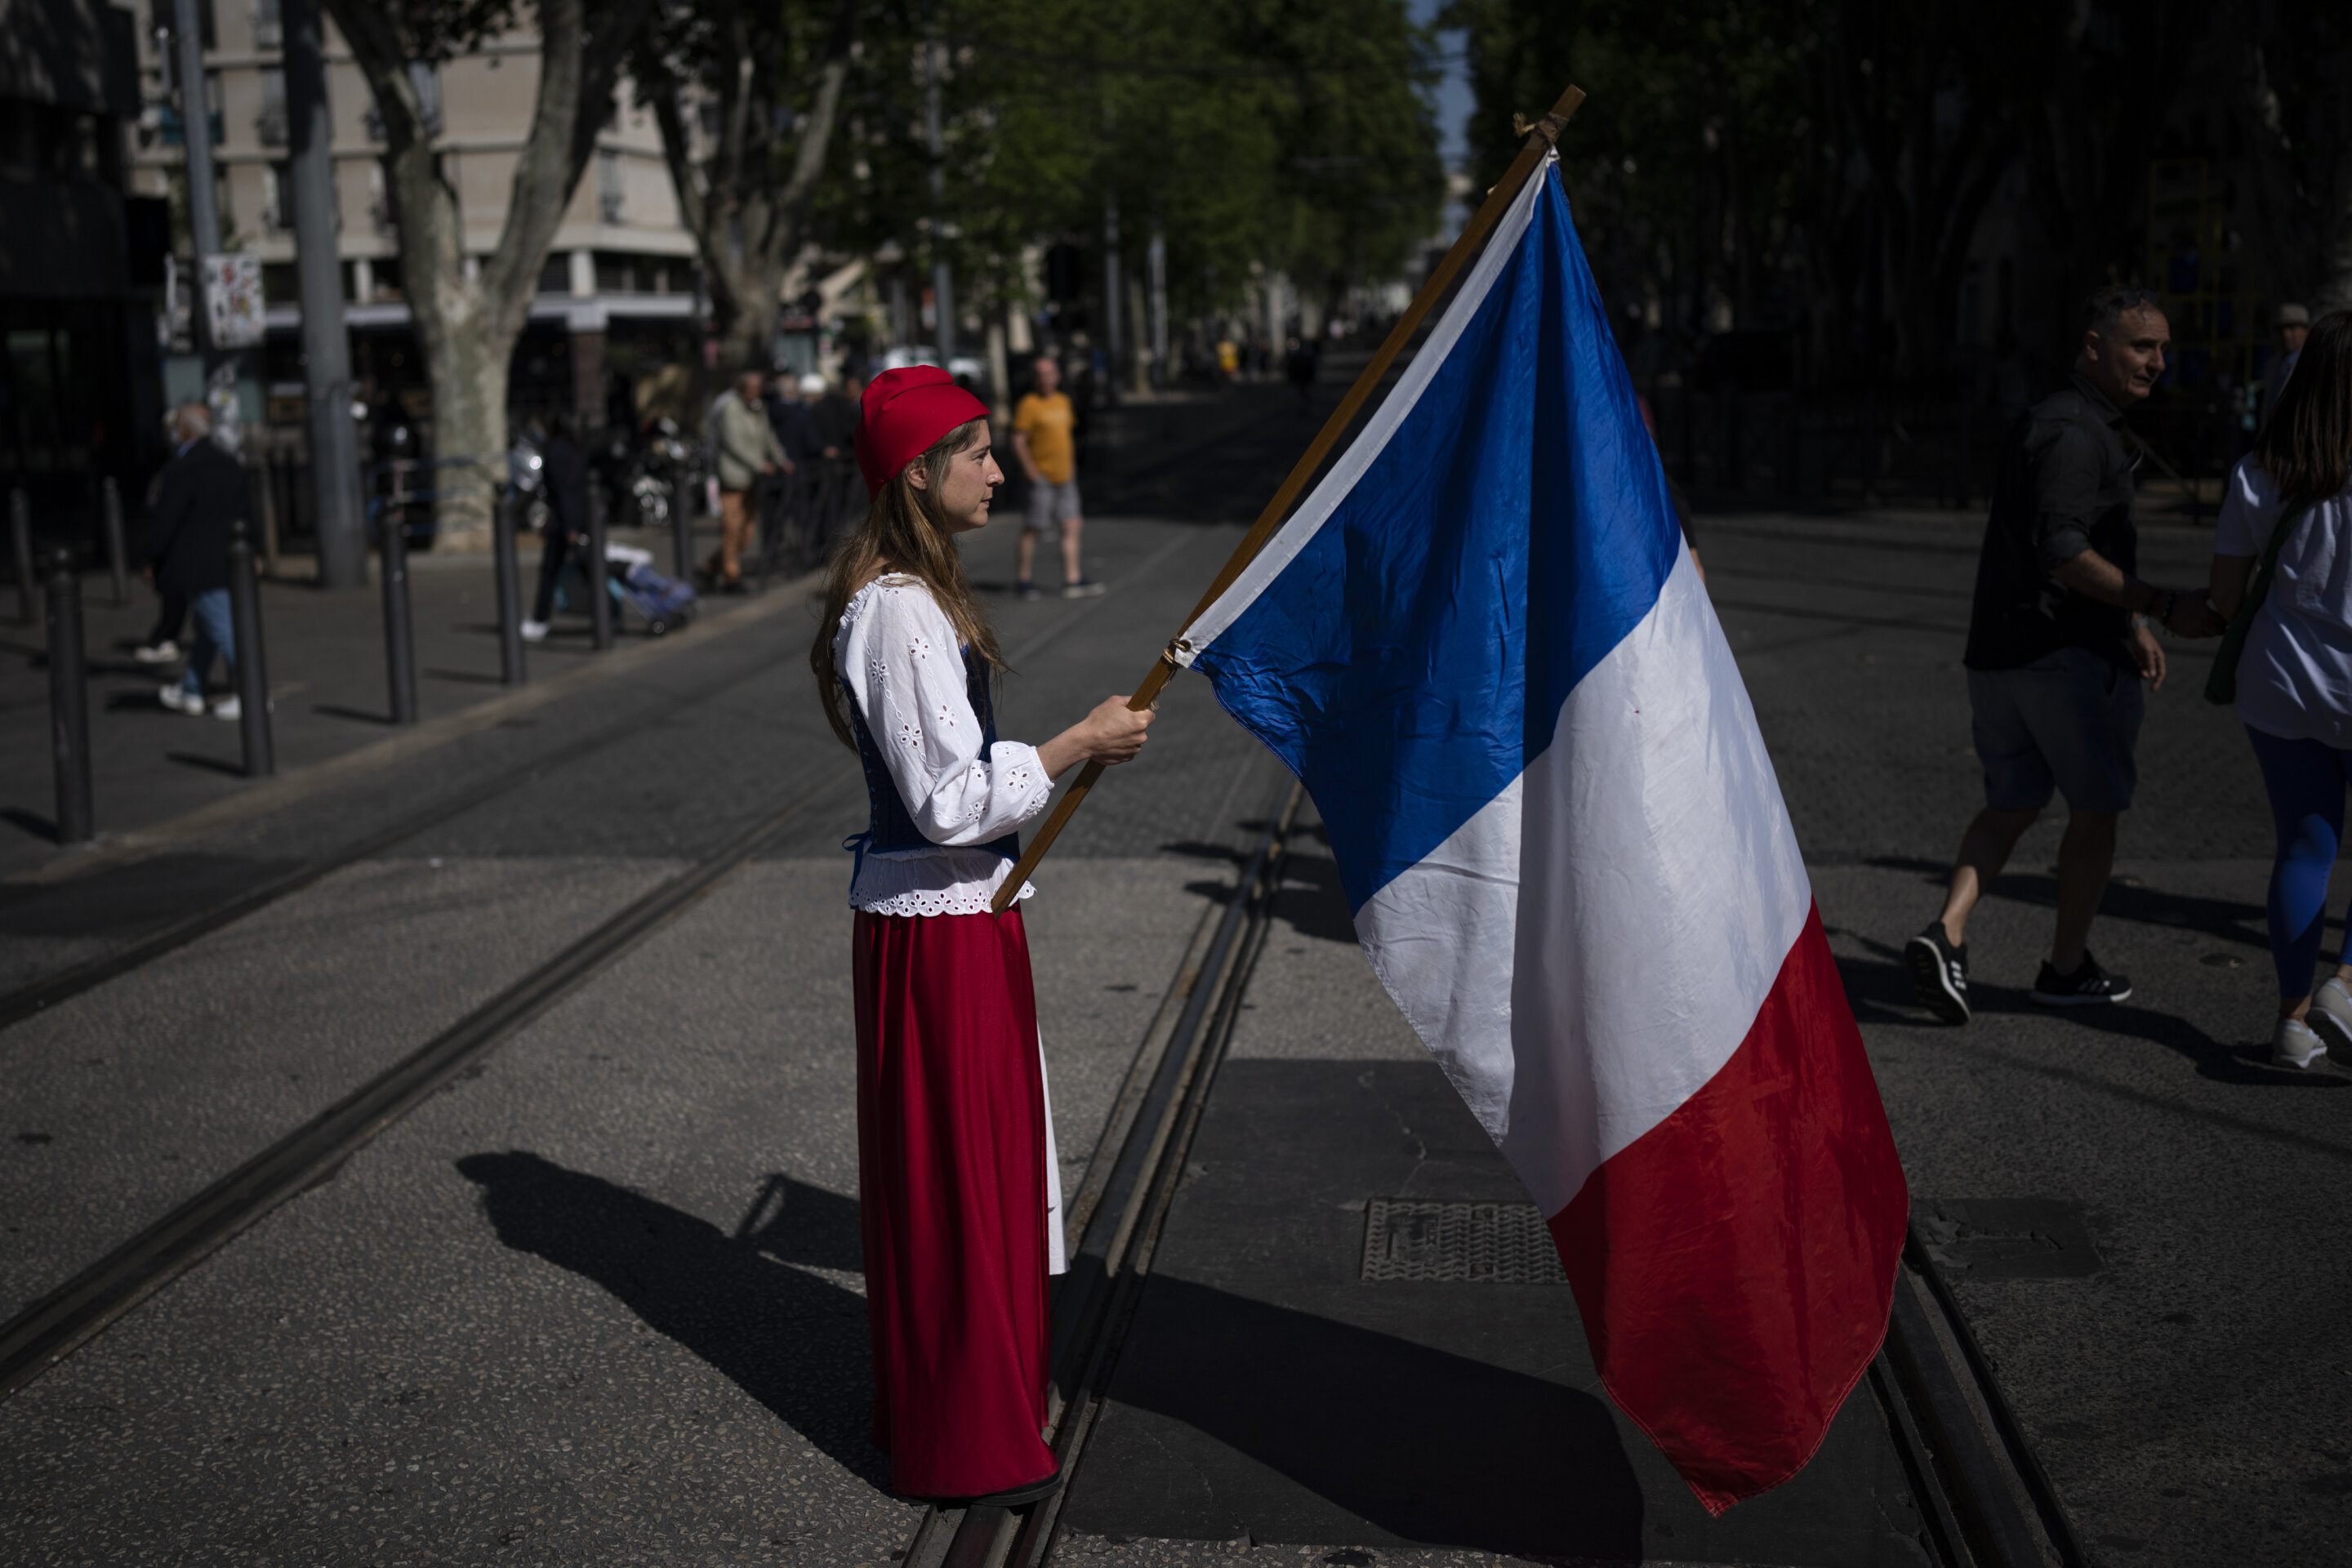 #France is a melting pot but discrimination lurks